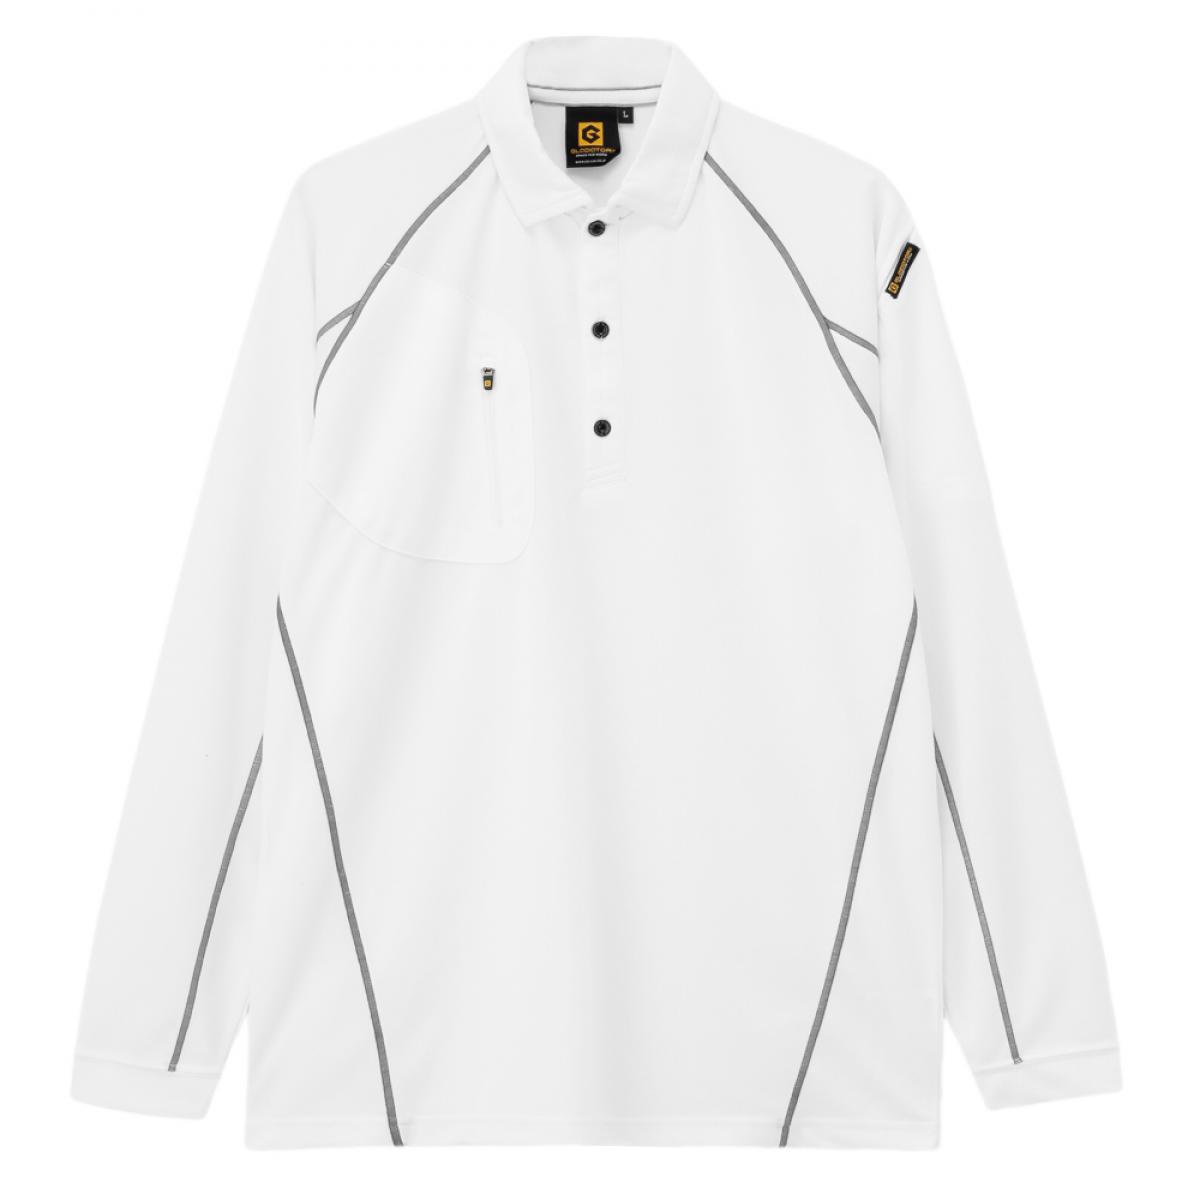 コーコス信岡 G-1418 冬バーゲン 特別送料無料 遮熱長袖ポロシャツ ホワイト LL 送料無料 激安 お買い得 キ゛フト